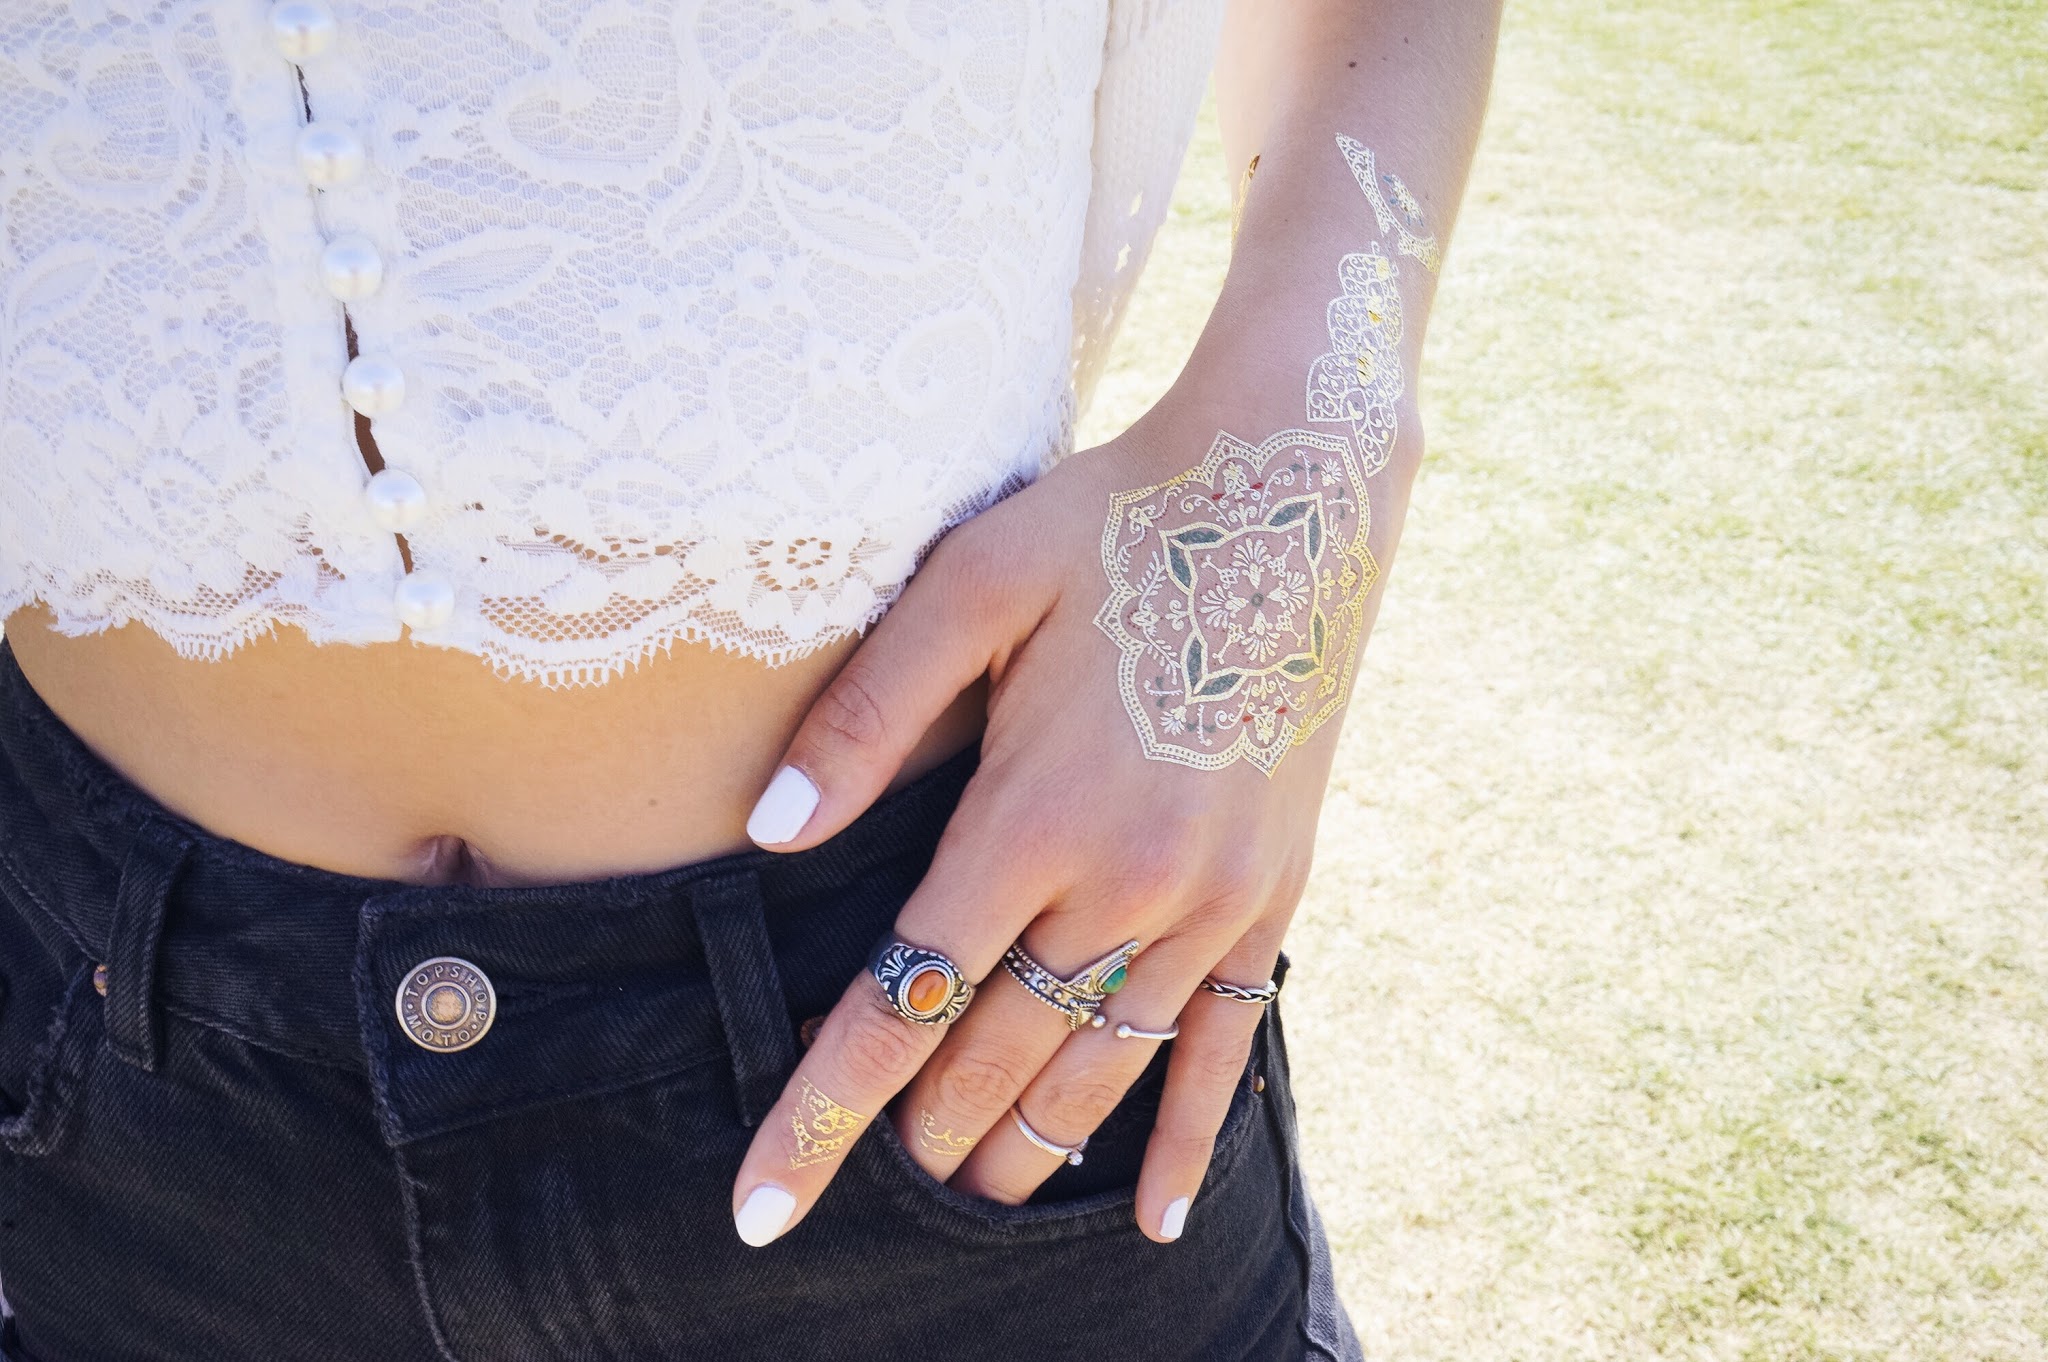 La blogueuse Meryl Denis a opté pour les tattoos dorés Sioou façon bijou de main lors du fetsival de Coachella